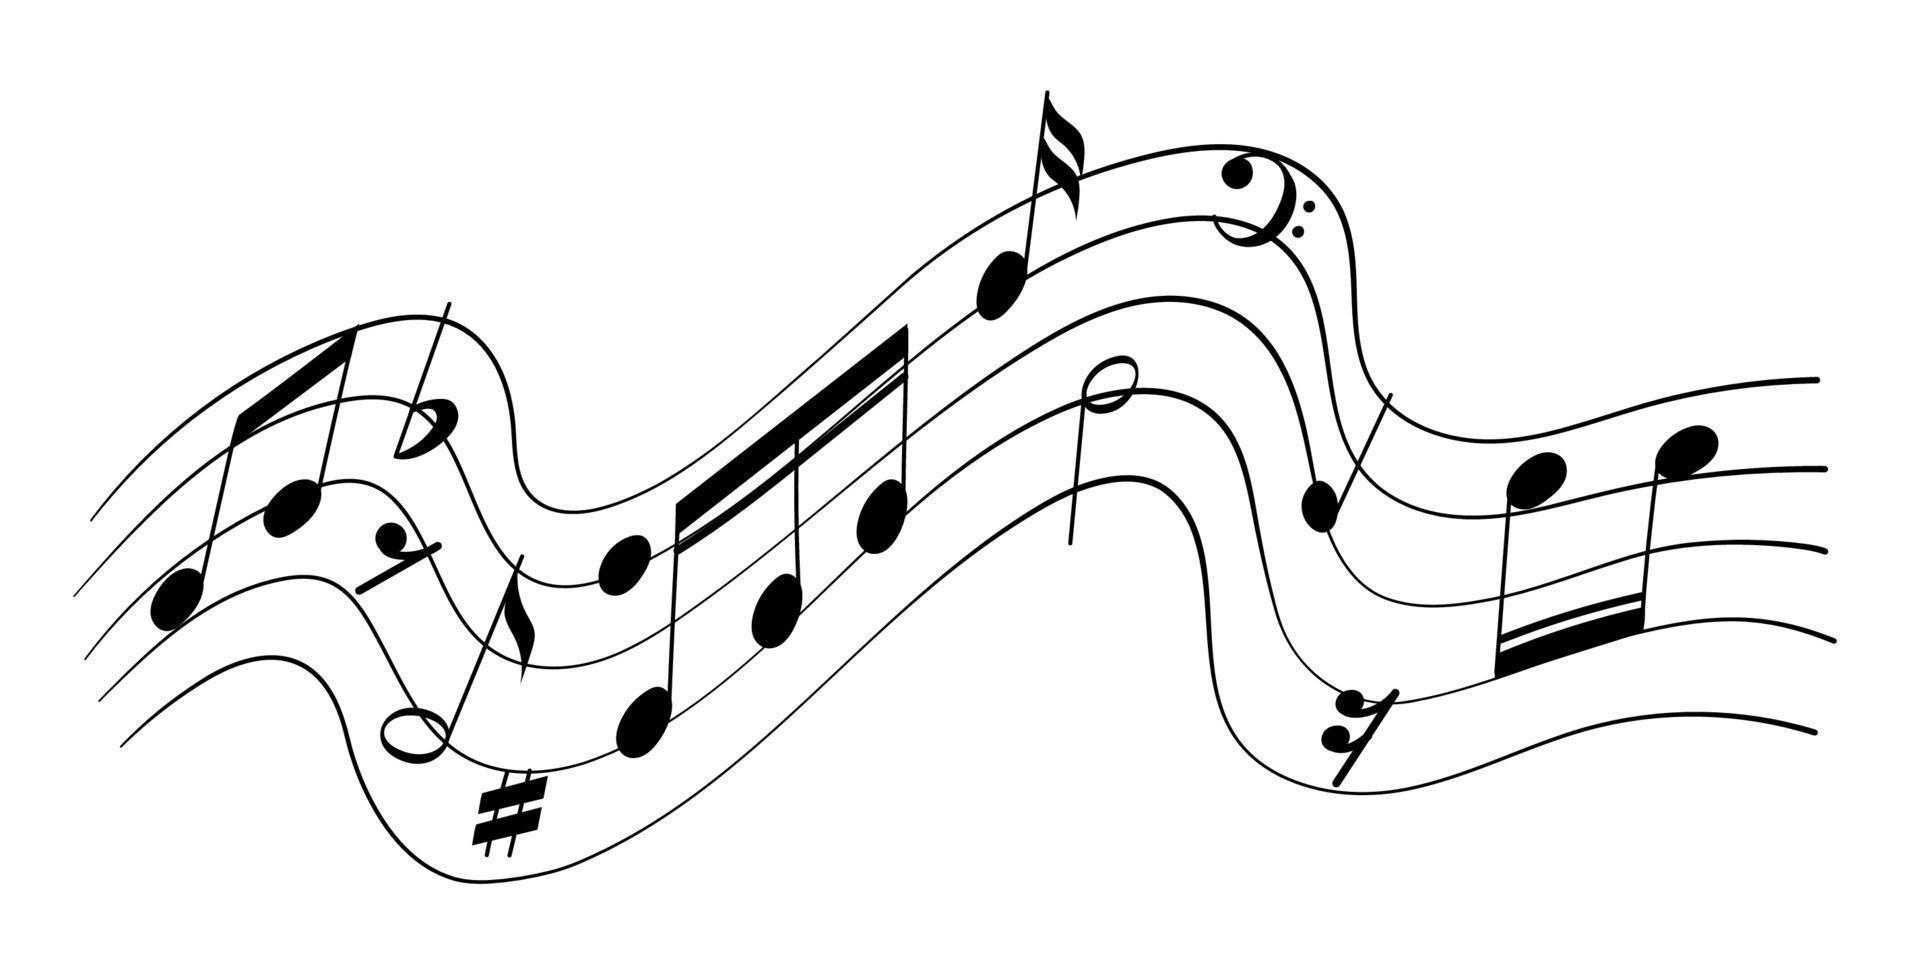 Musiknoten Vektorillustration der musikalischen Elemente auf weißem Hintergrund vektor